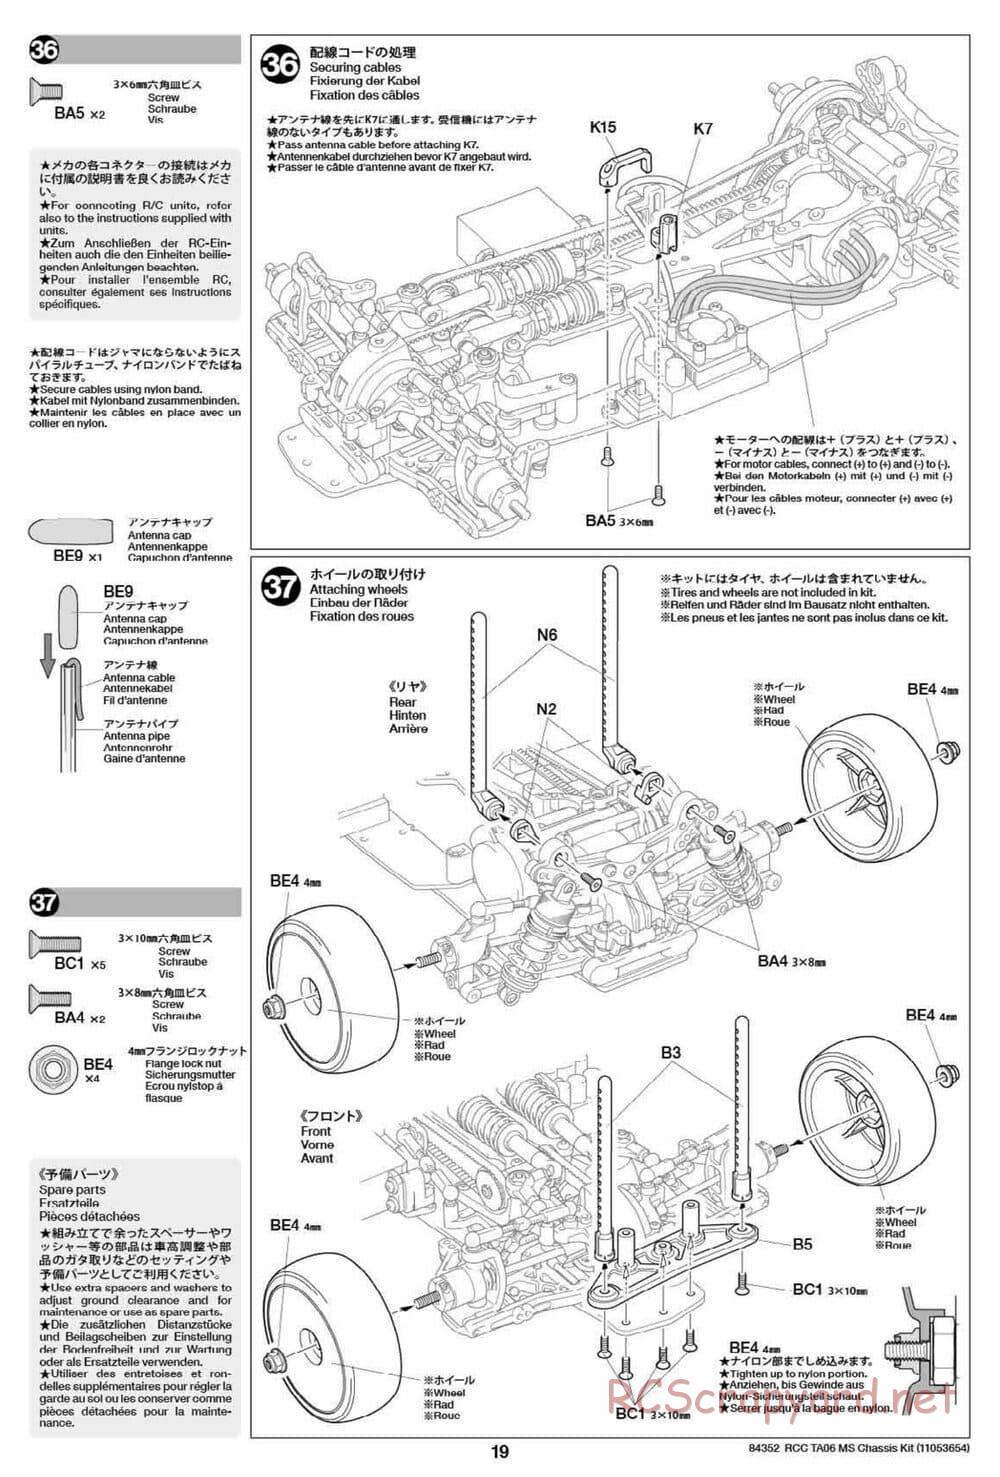 Tamiya - TA06 MS Chassis - Manual - Page 19